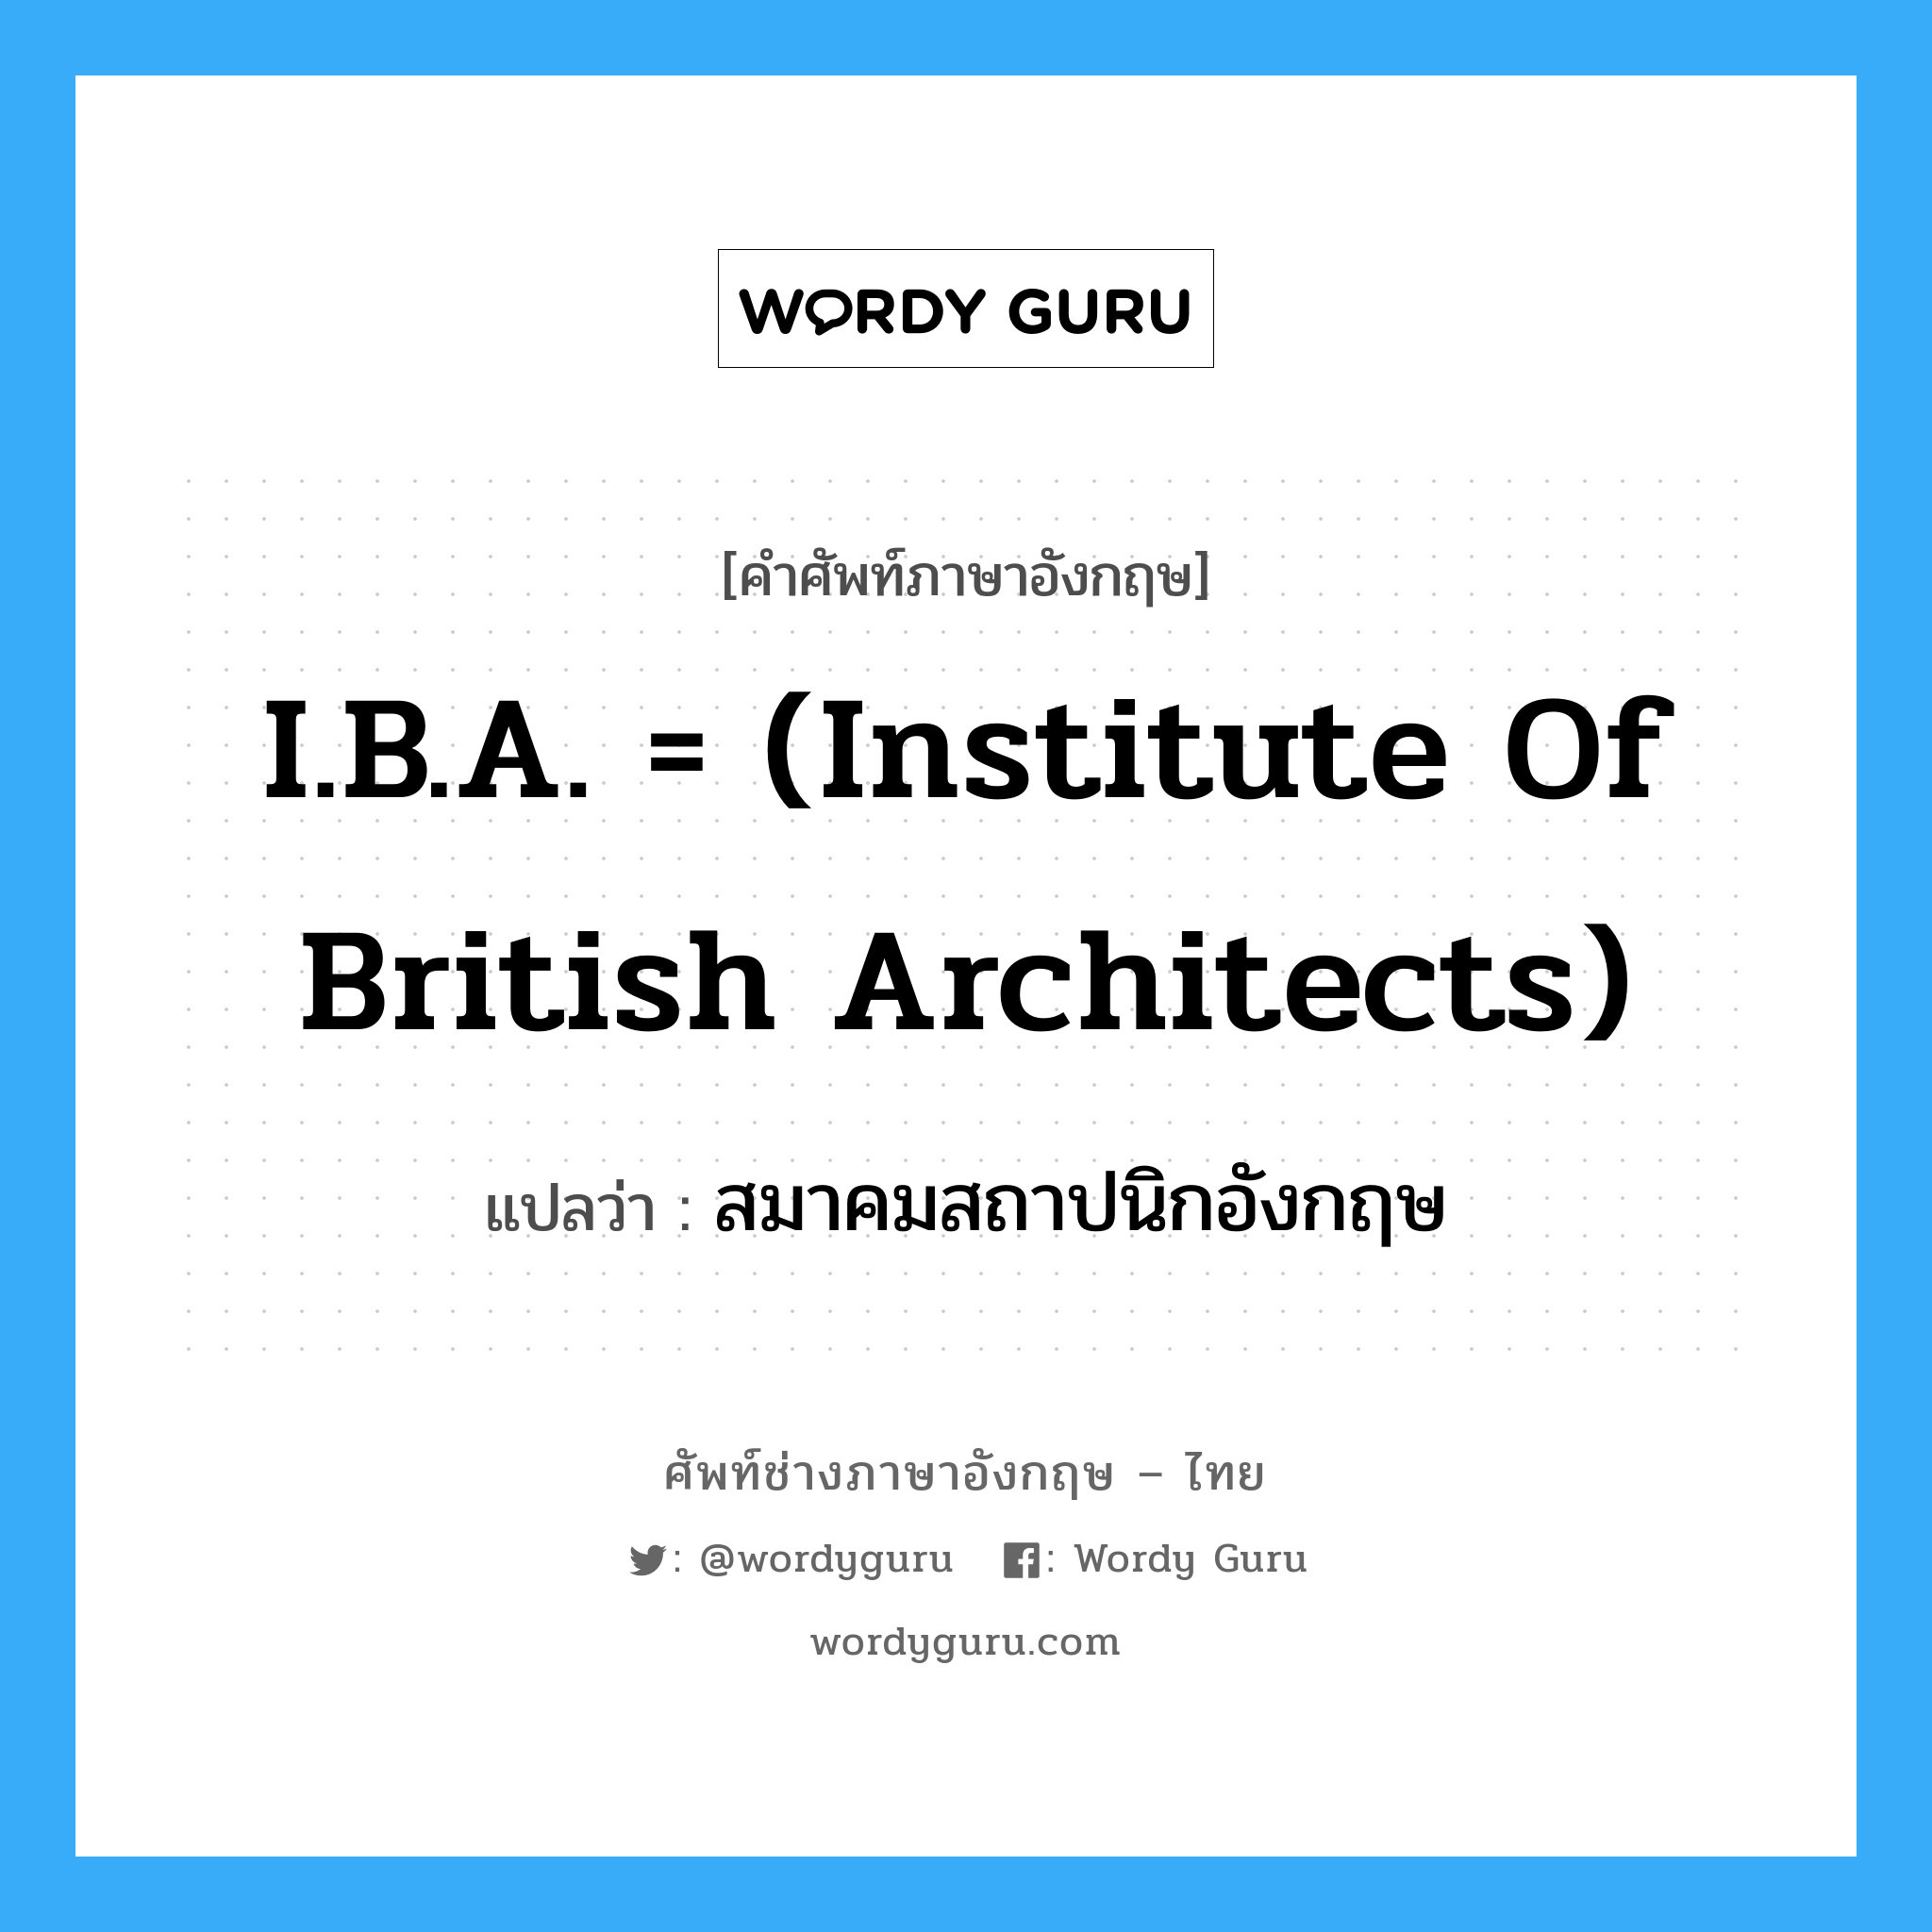 I.B.A. = (Institute of British Architects) แปลว่า?, คำศัพท์ช่างภาษาอังกฤษ - ไทย I.B.A. = (Institute of British Architects) คำศัพท์ภาษาอังกฤษ I.B.A. = (Institute of British Architects) แปลว่า สมาคมสถาปนิกอังกฤษ